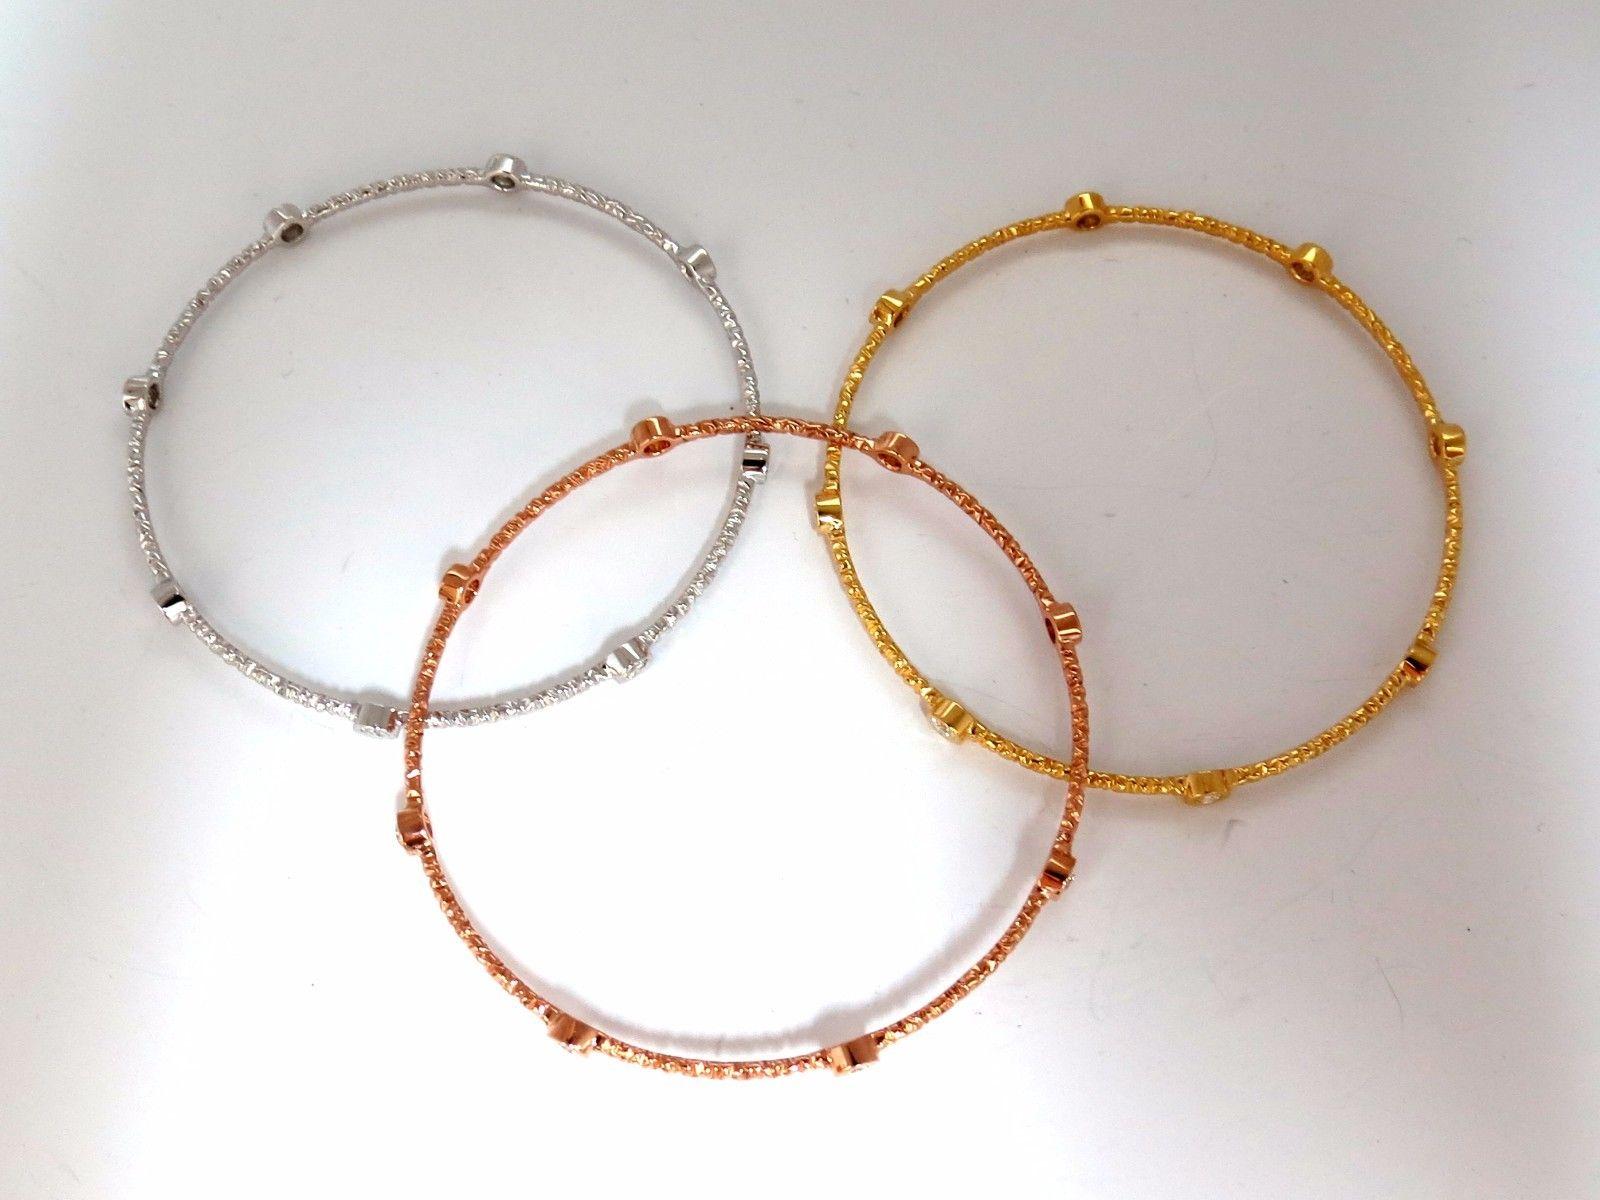 8 inch bangle bracelets